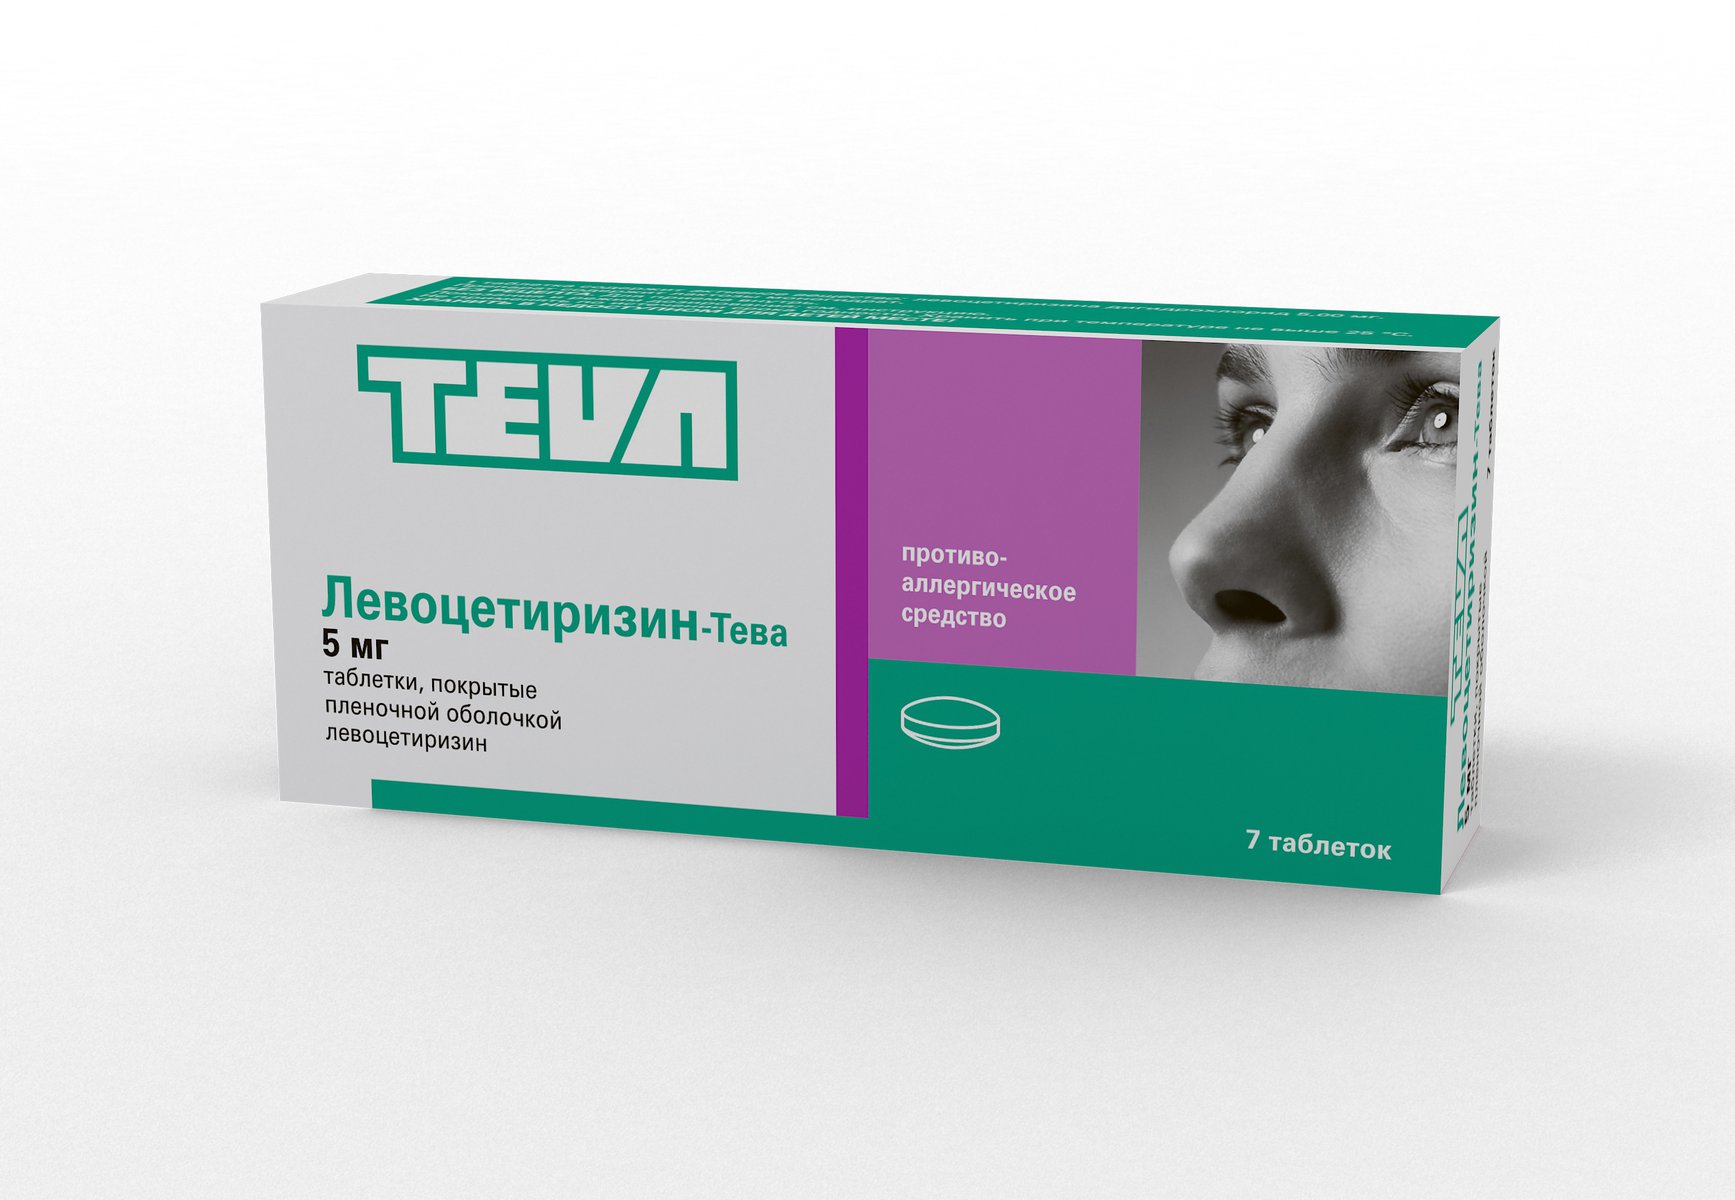 Левоцетиризин-Тева (таблетки, 7 шт, 5 мг, для приема внутрь) - цена .